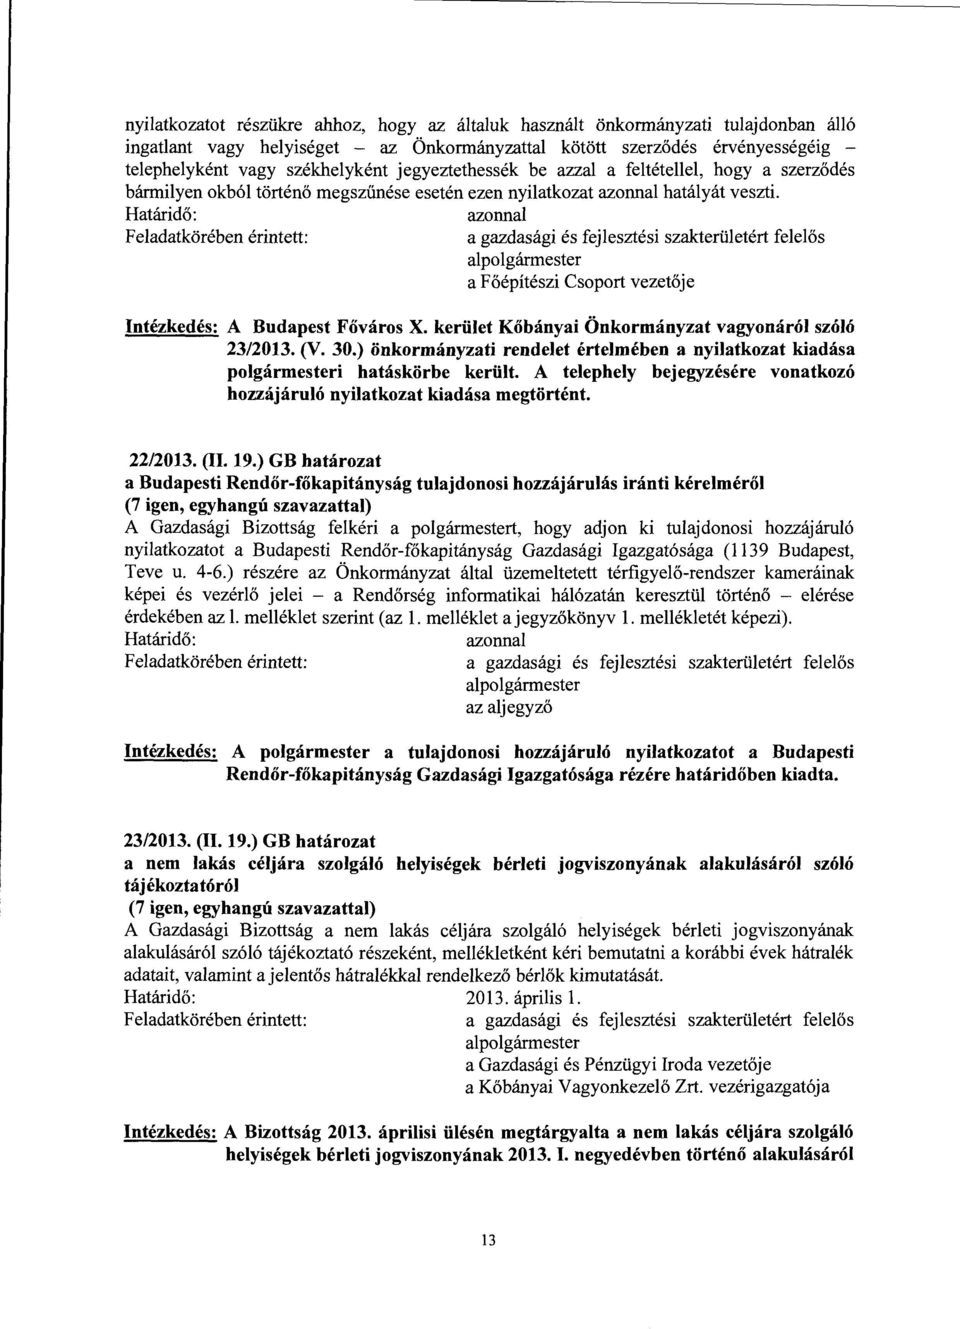 kerület Kőbányai Önkormányzat vagyonáról szóló 23/2013. (V. 30.) önkormányzati rendelet értelmében a nyilatkozat kiadása polgármesteri hatáskörbe került.